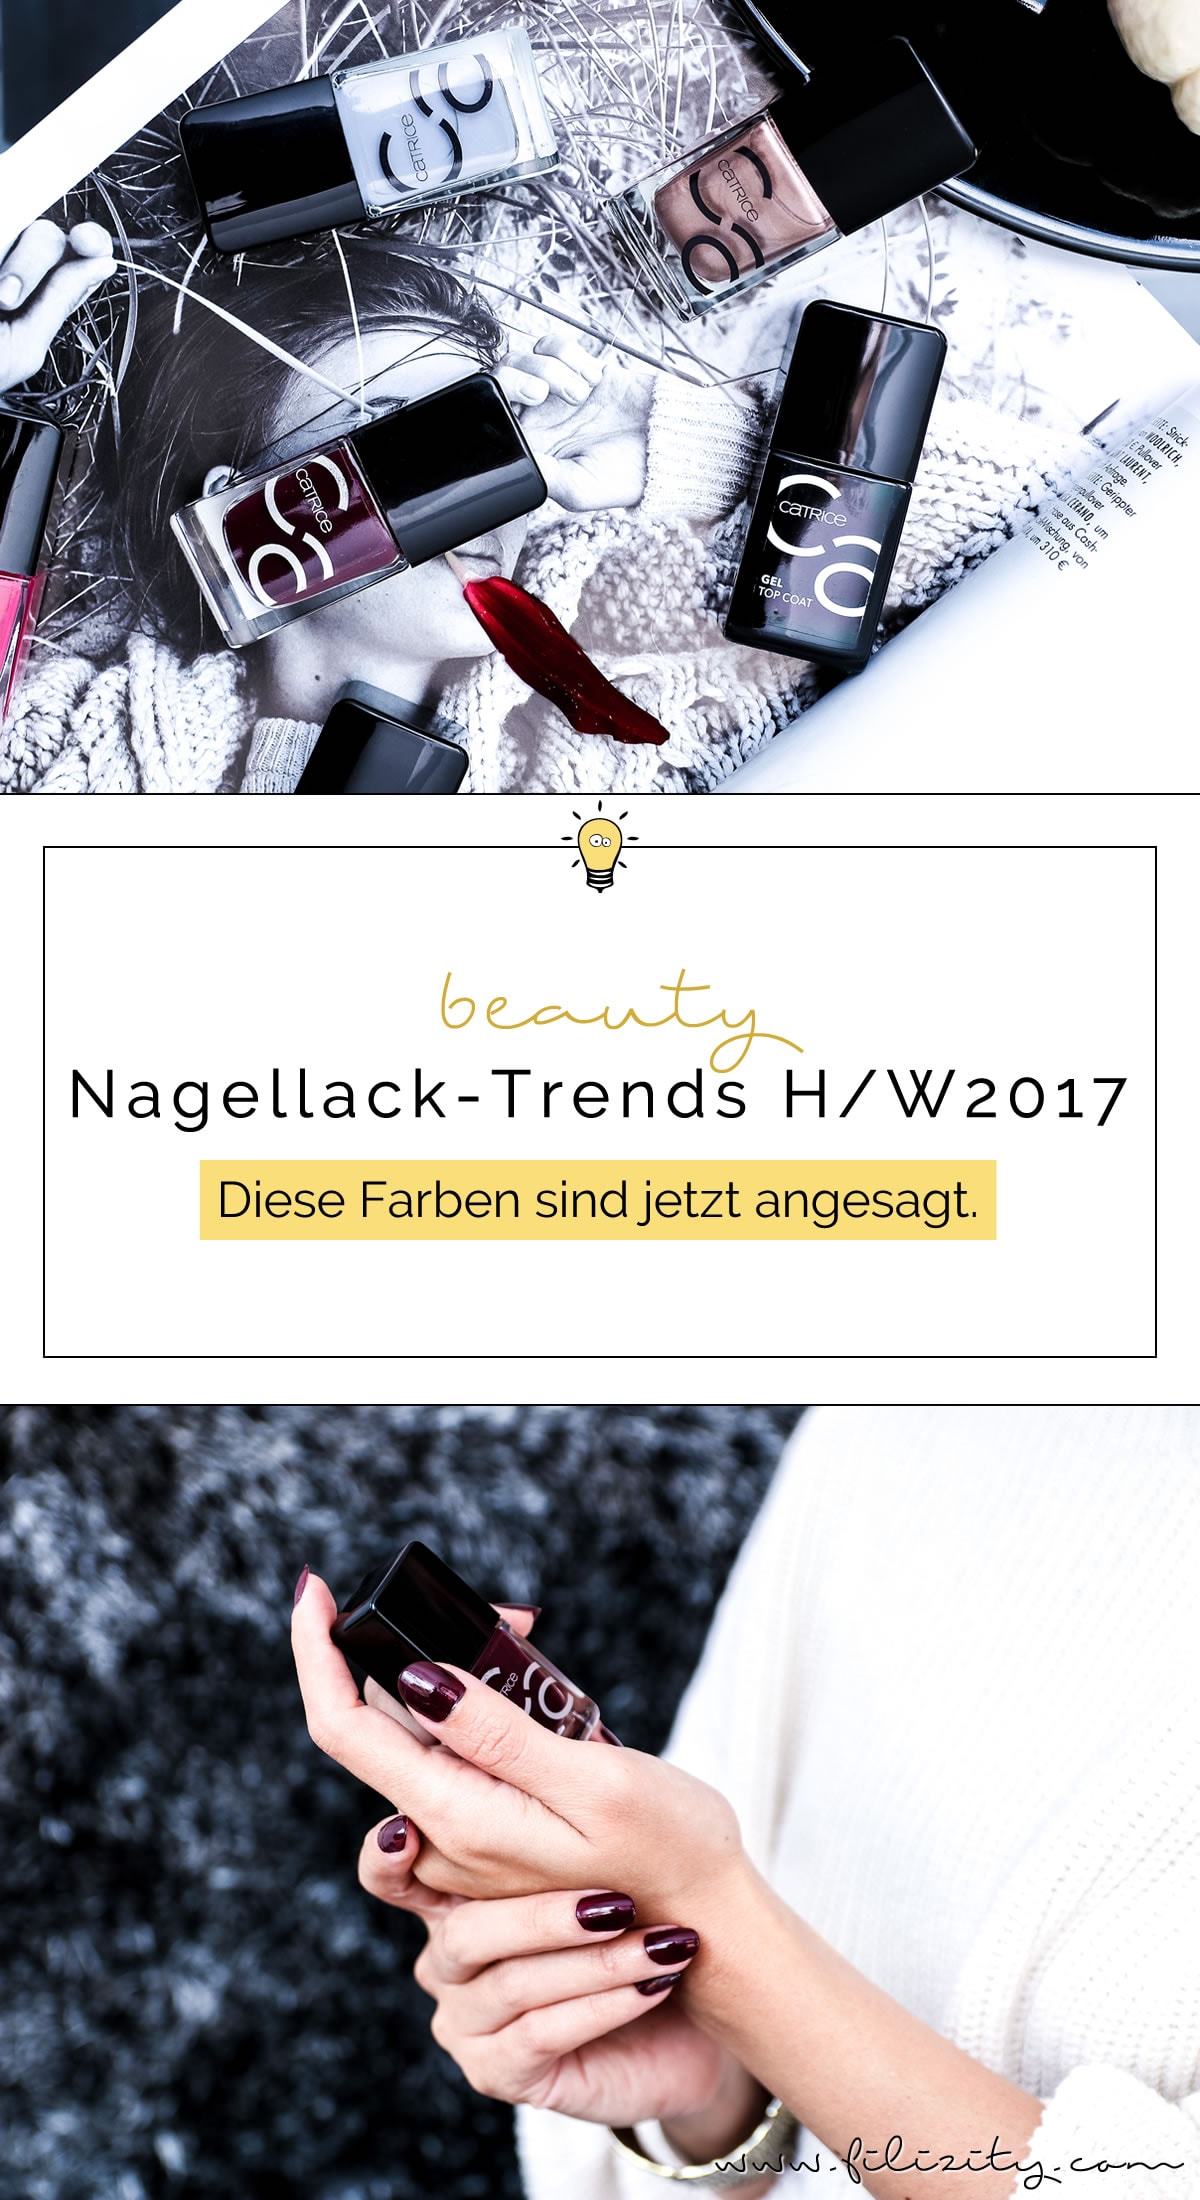 Nagellack-Trends Herbst / Winter 2017 - Diese Farben sind jetzt angesagt #nagellack #naildesign #nails #trend #herbst #winter